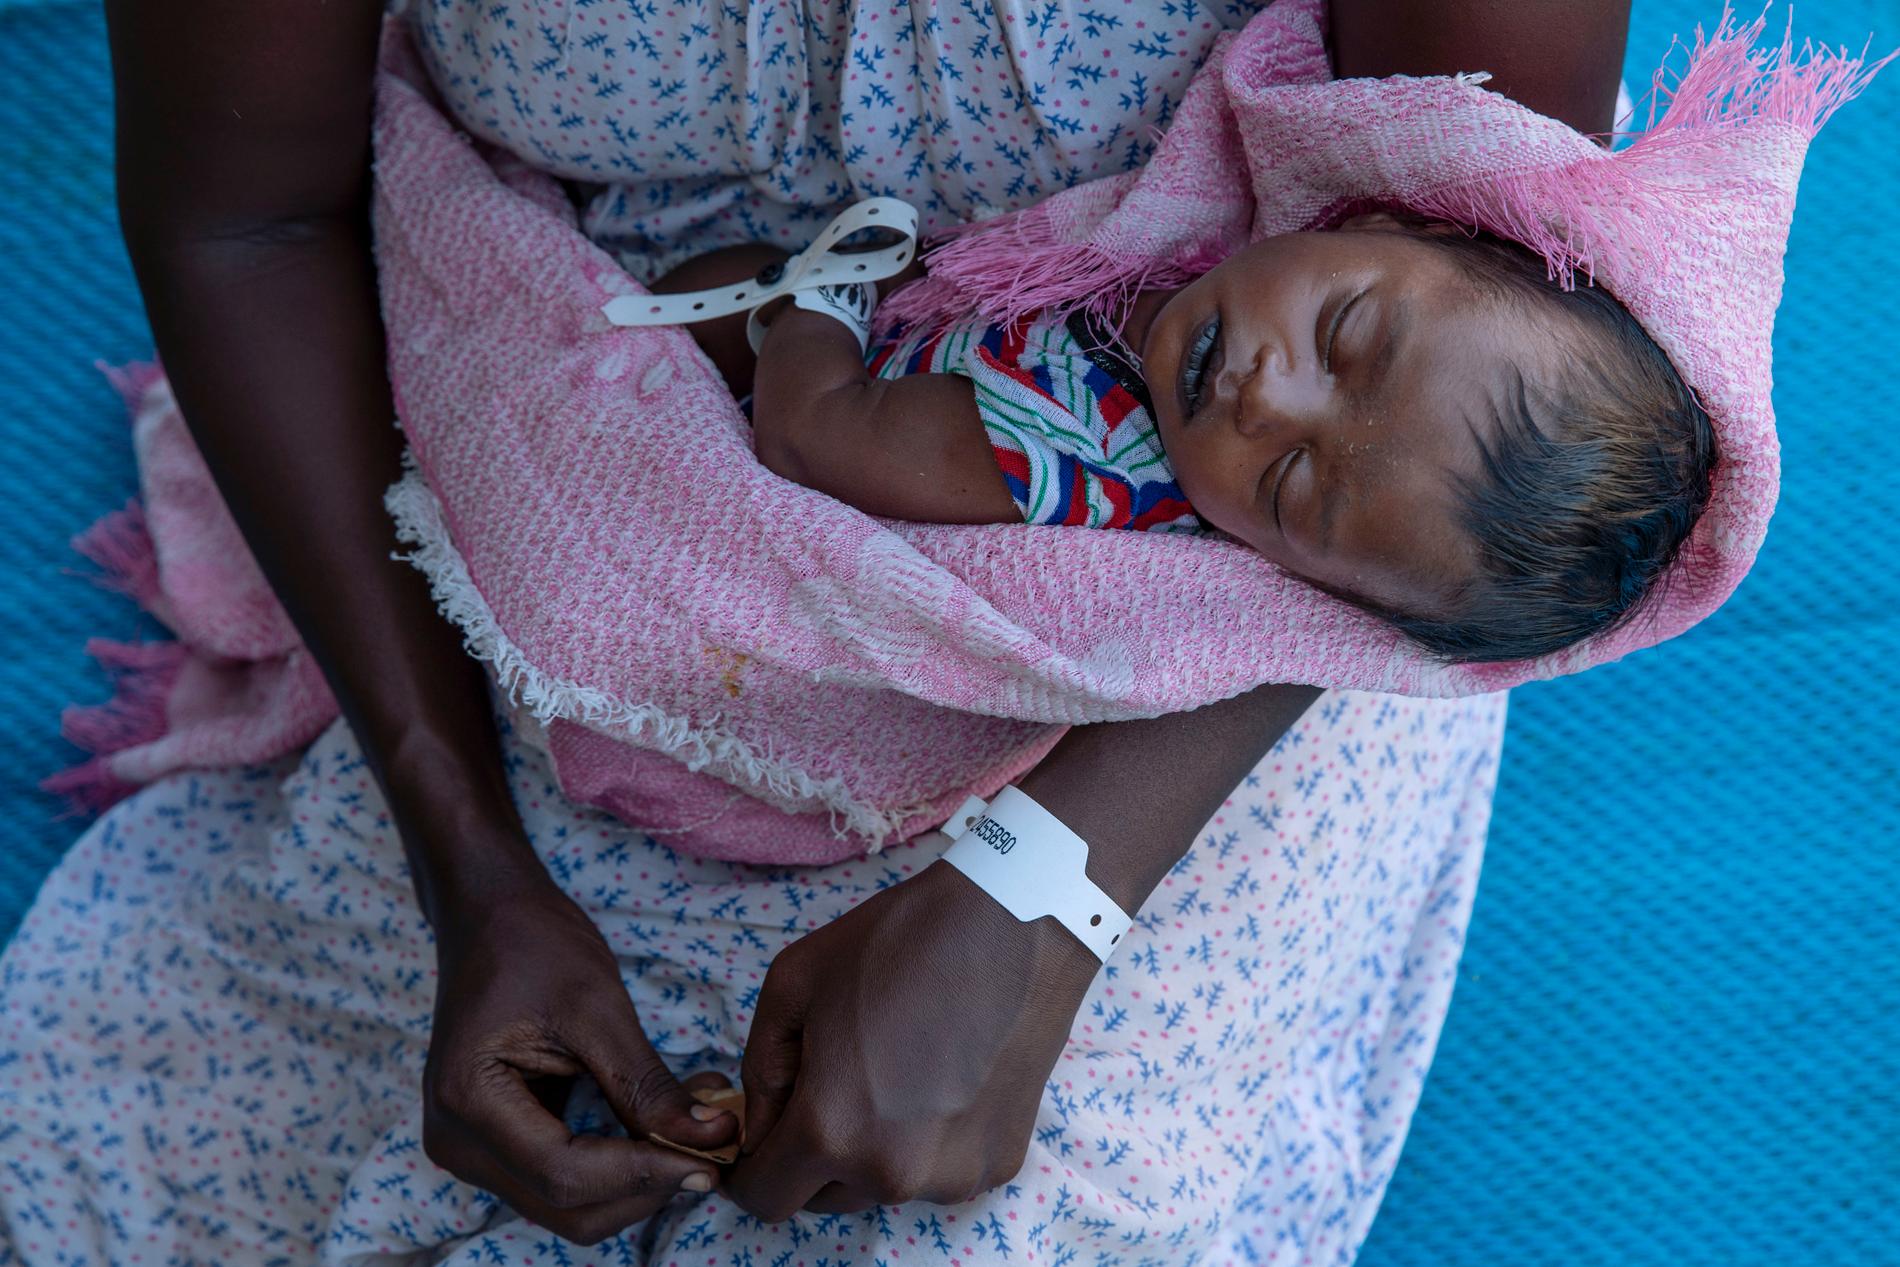 Tjugofemåriga Terhas Tsfa var höggravid när hon flydde striderna i Tigray, och fick föda sitt barn vid vägkanten. Nu befinner hon sig i ett flyktingläger i Qadarif i östra Sudan.